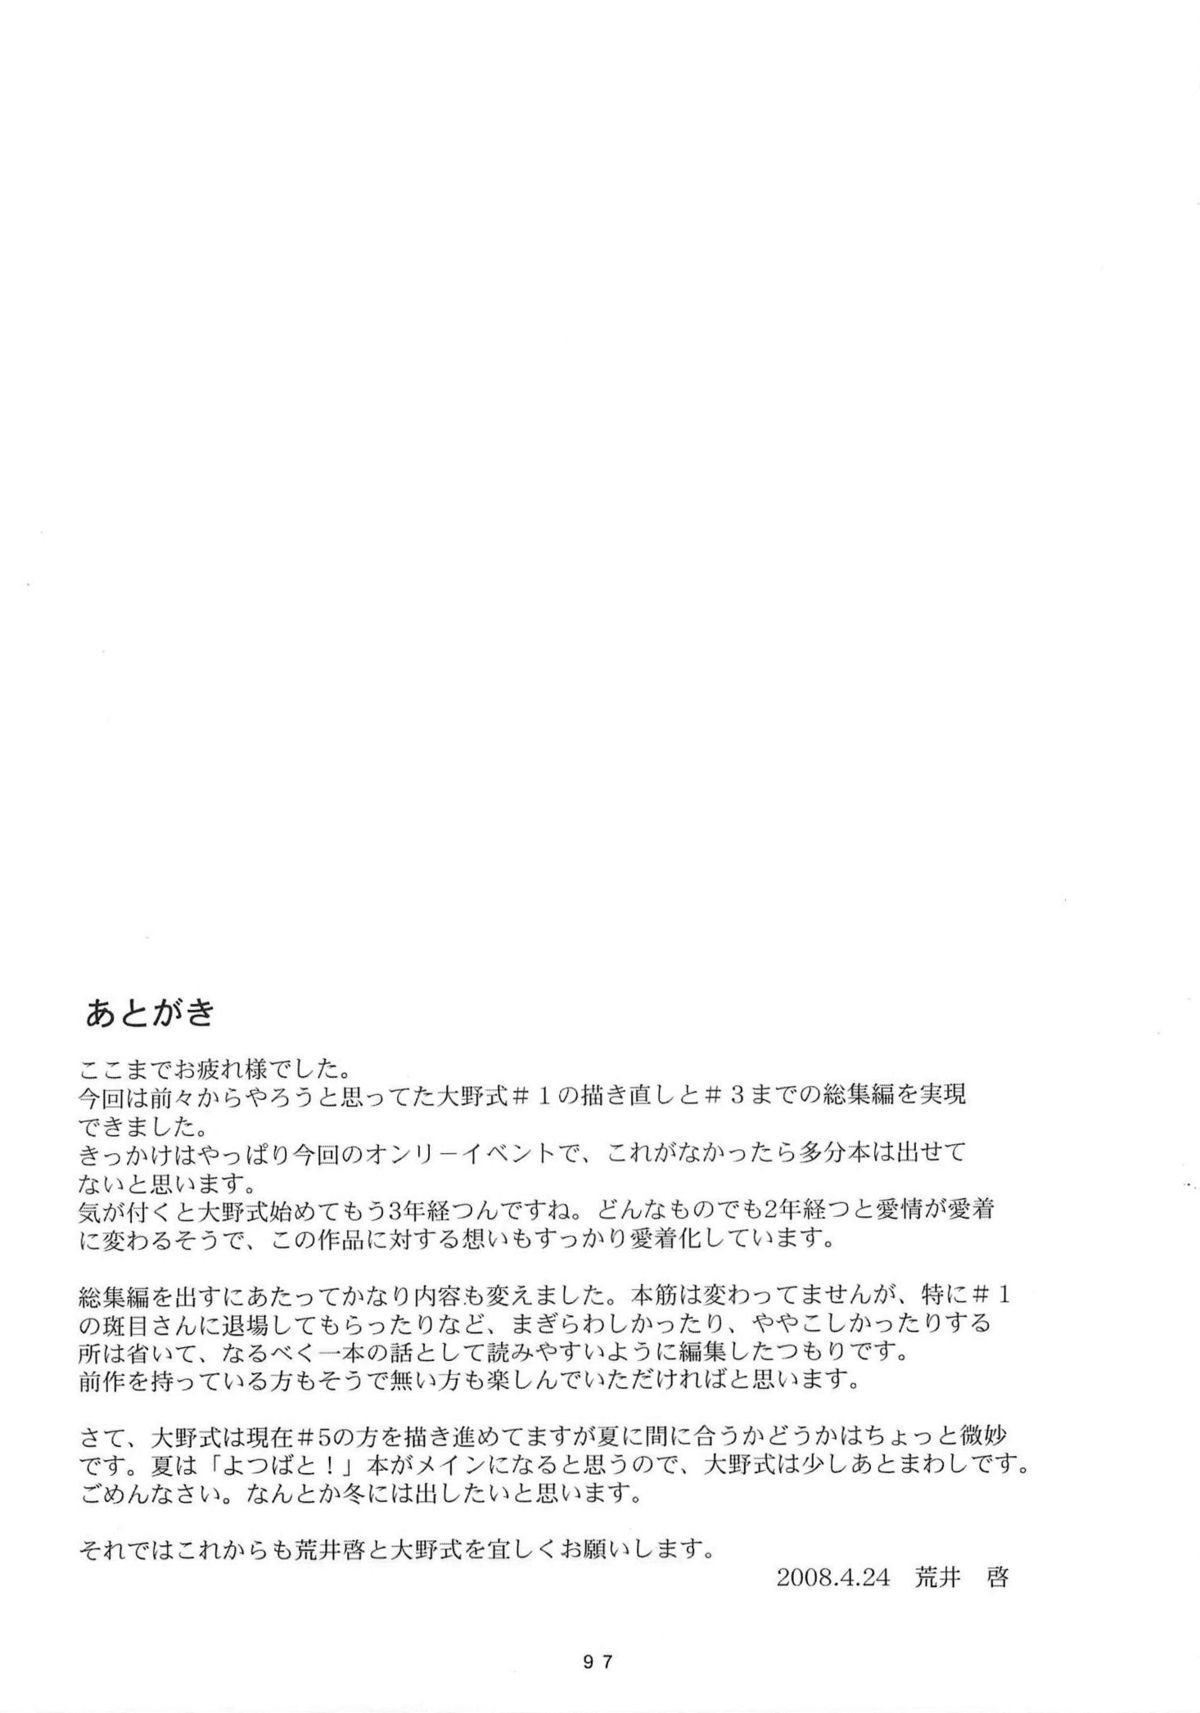 (Shotaket 13) [Kansai Orange (Arai Kei)] [memories] Oono Shiki Soushuuhen (Omnibus) 1 (Genshiken) [English] =Imari+Masamune= (ショタケット 13) [関西オレンジ (荒井啓)] [memories] 大野式総集編.1 (げんしけん) [英訳]